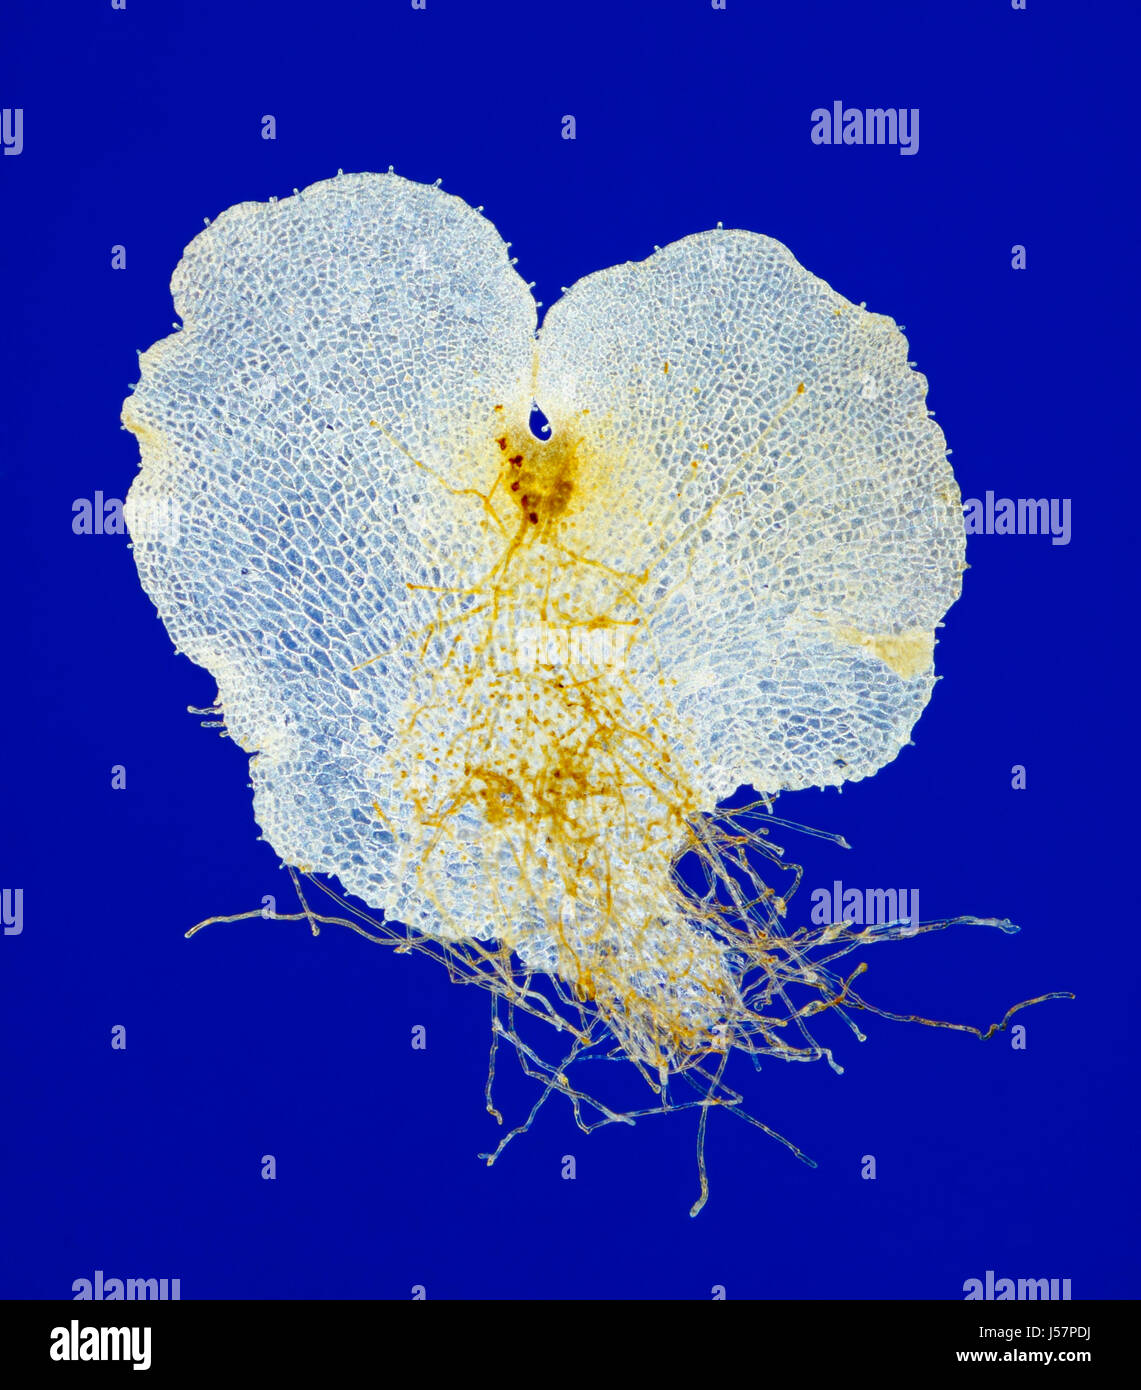 Vue microscopique du prothalle de fougère (prothallus) avec suppression de la chlorophylle. Rheinberg illumination. Banque D'Images